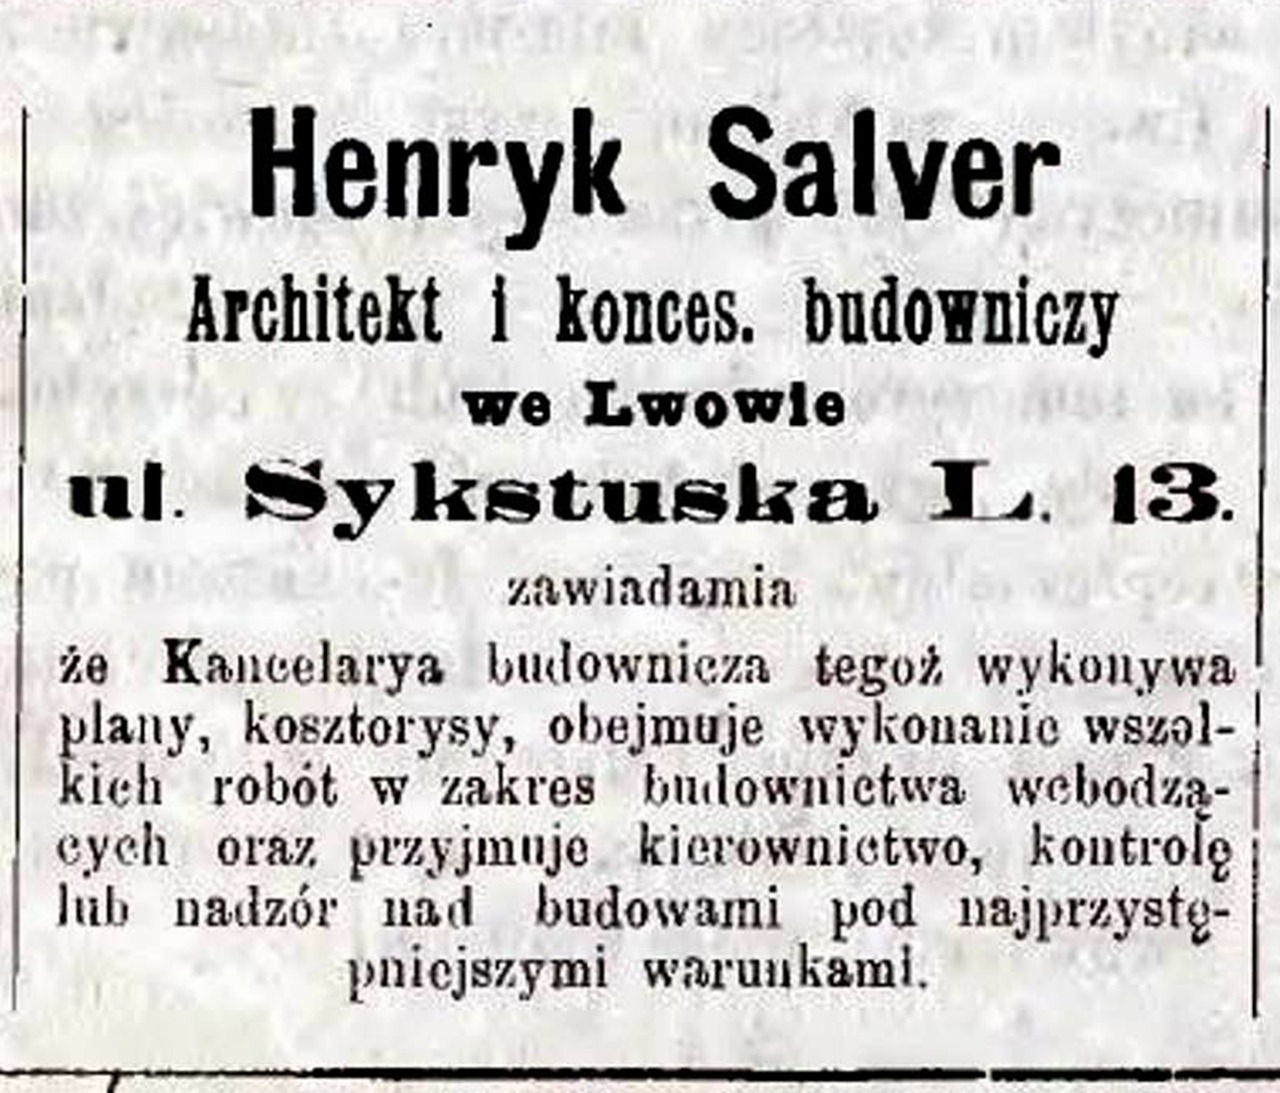 Оголошення Генрика Сальвера в газеті «Głos Wolny», 1893 р.